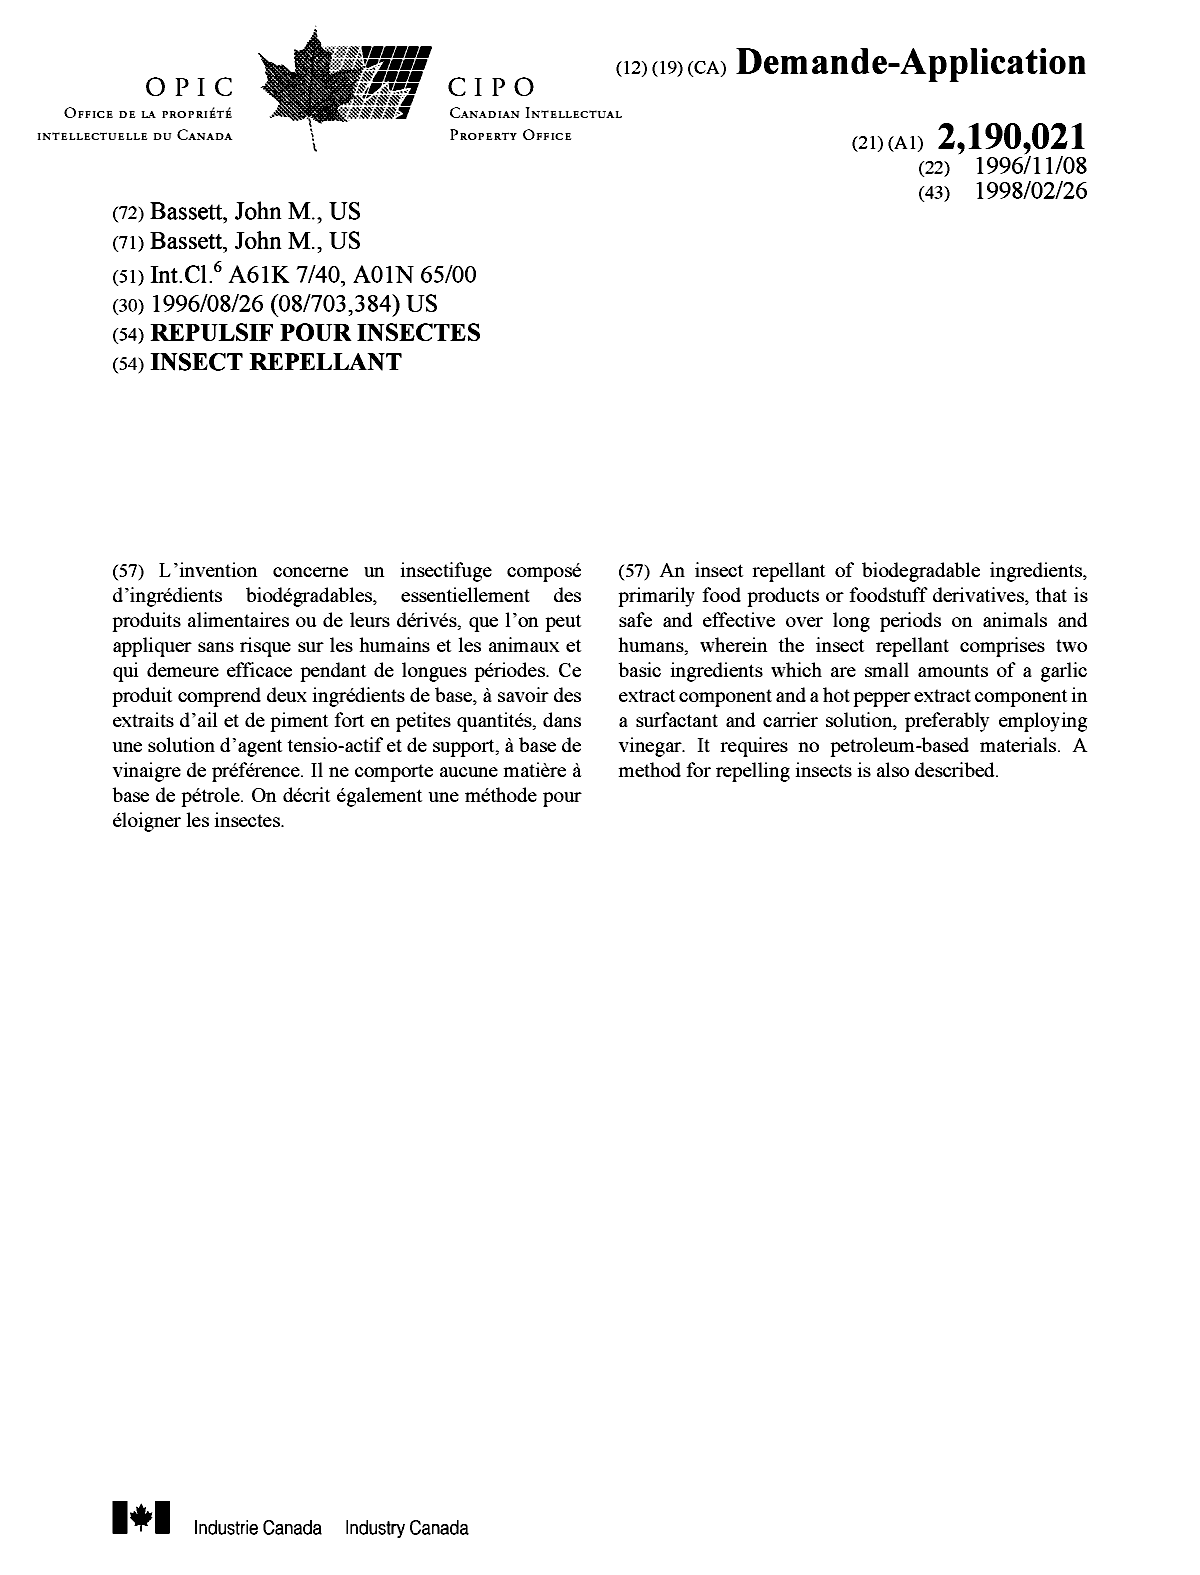 Document de brevet canadien 2190021. Page couverture 19980311. Image 1 de 1